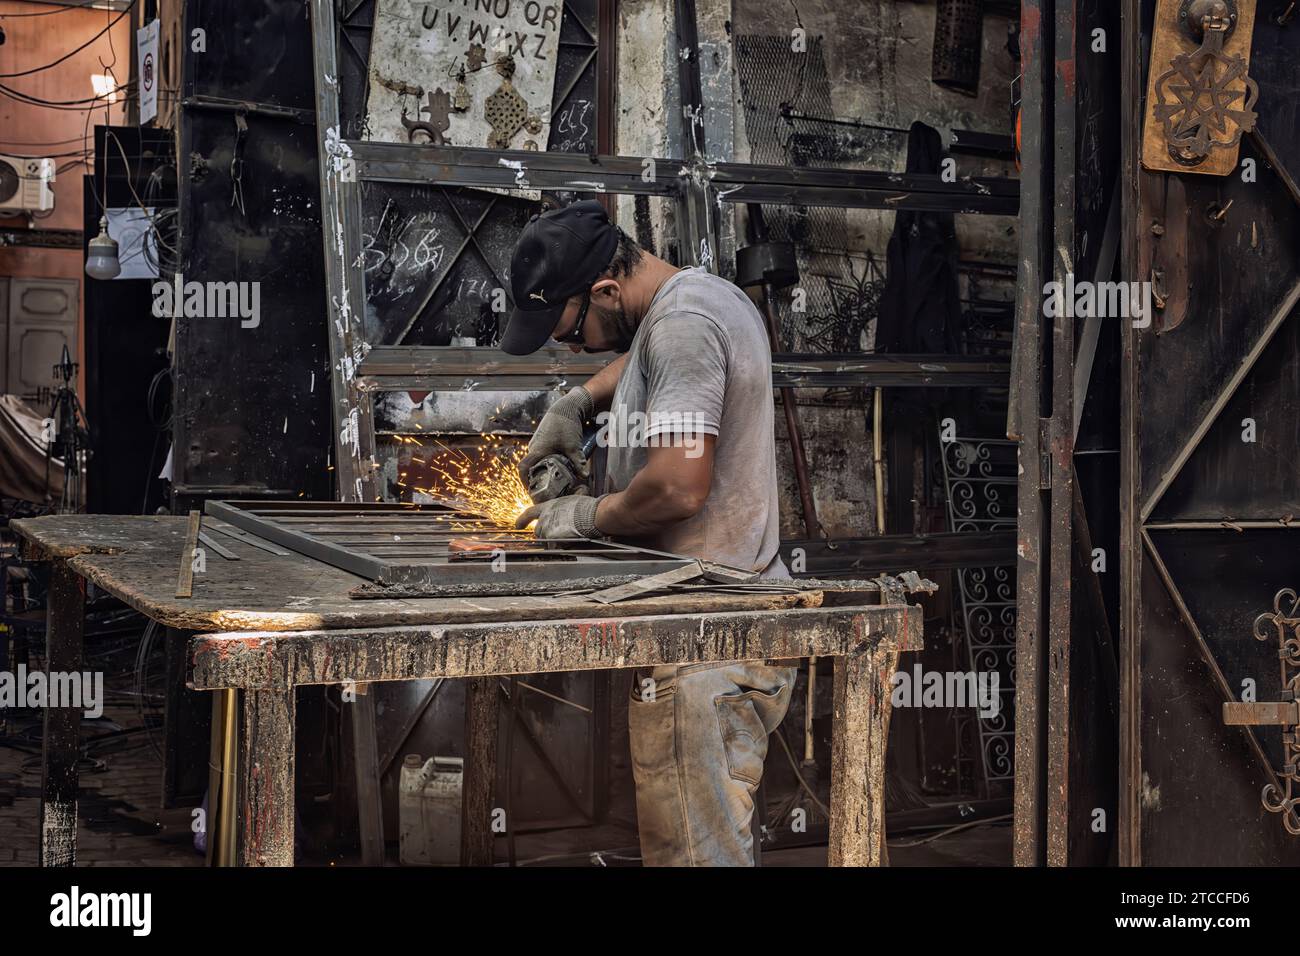 Marrakech, Maroc : forgeron travaillant dans un atelier au souk de la Médina de Marrakech. Artisan marocain produisant des étincelles en soudant. Banque D'Images